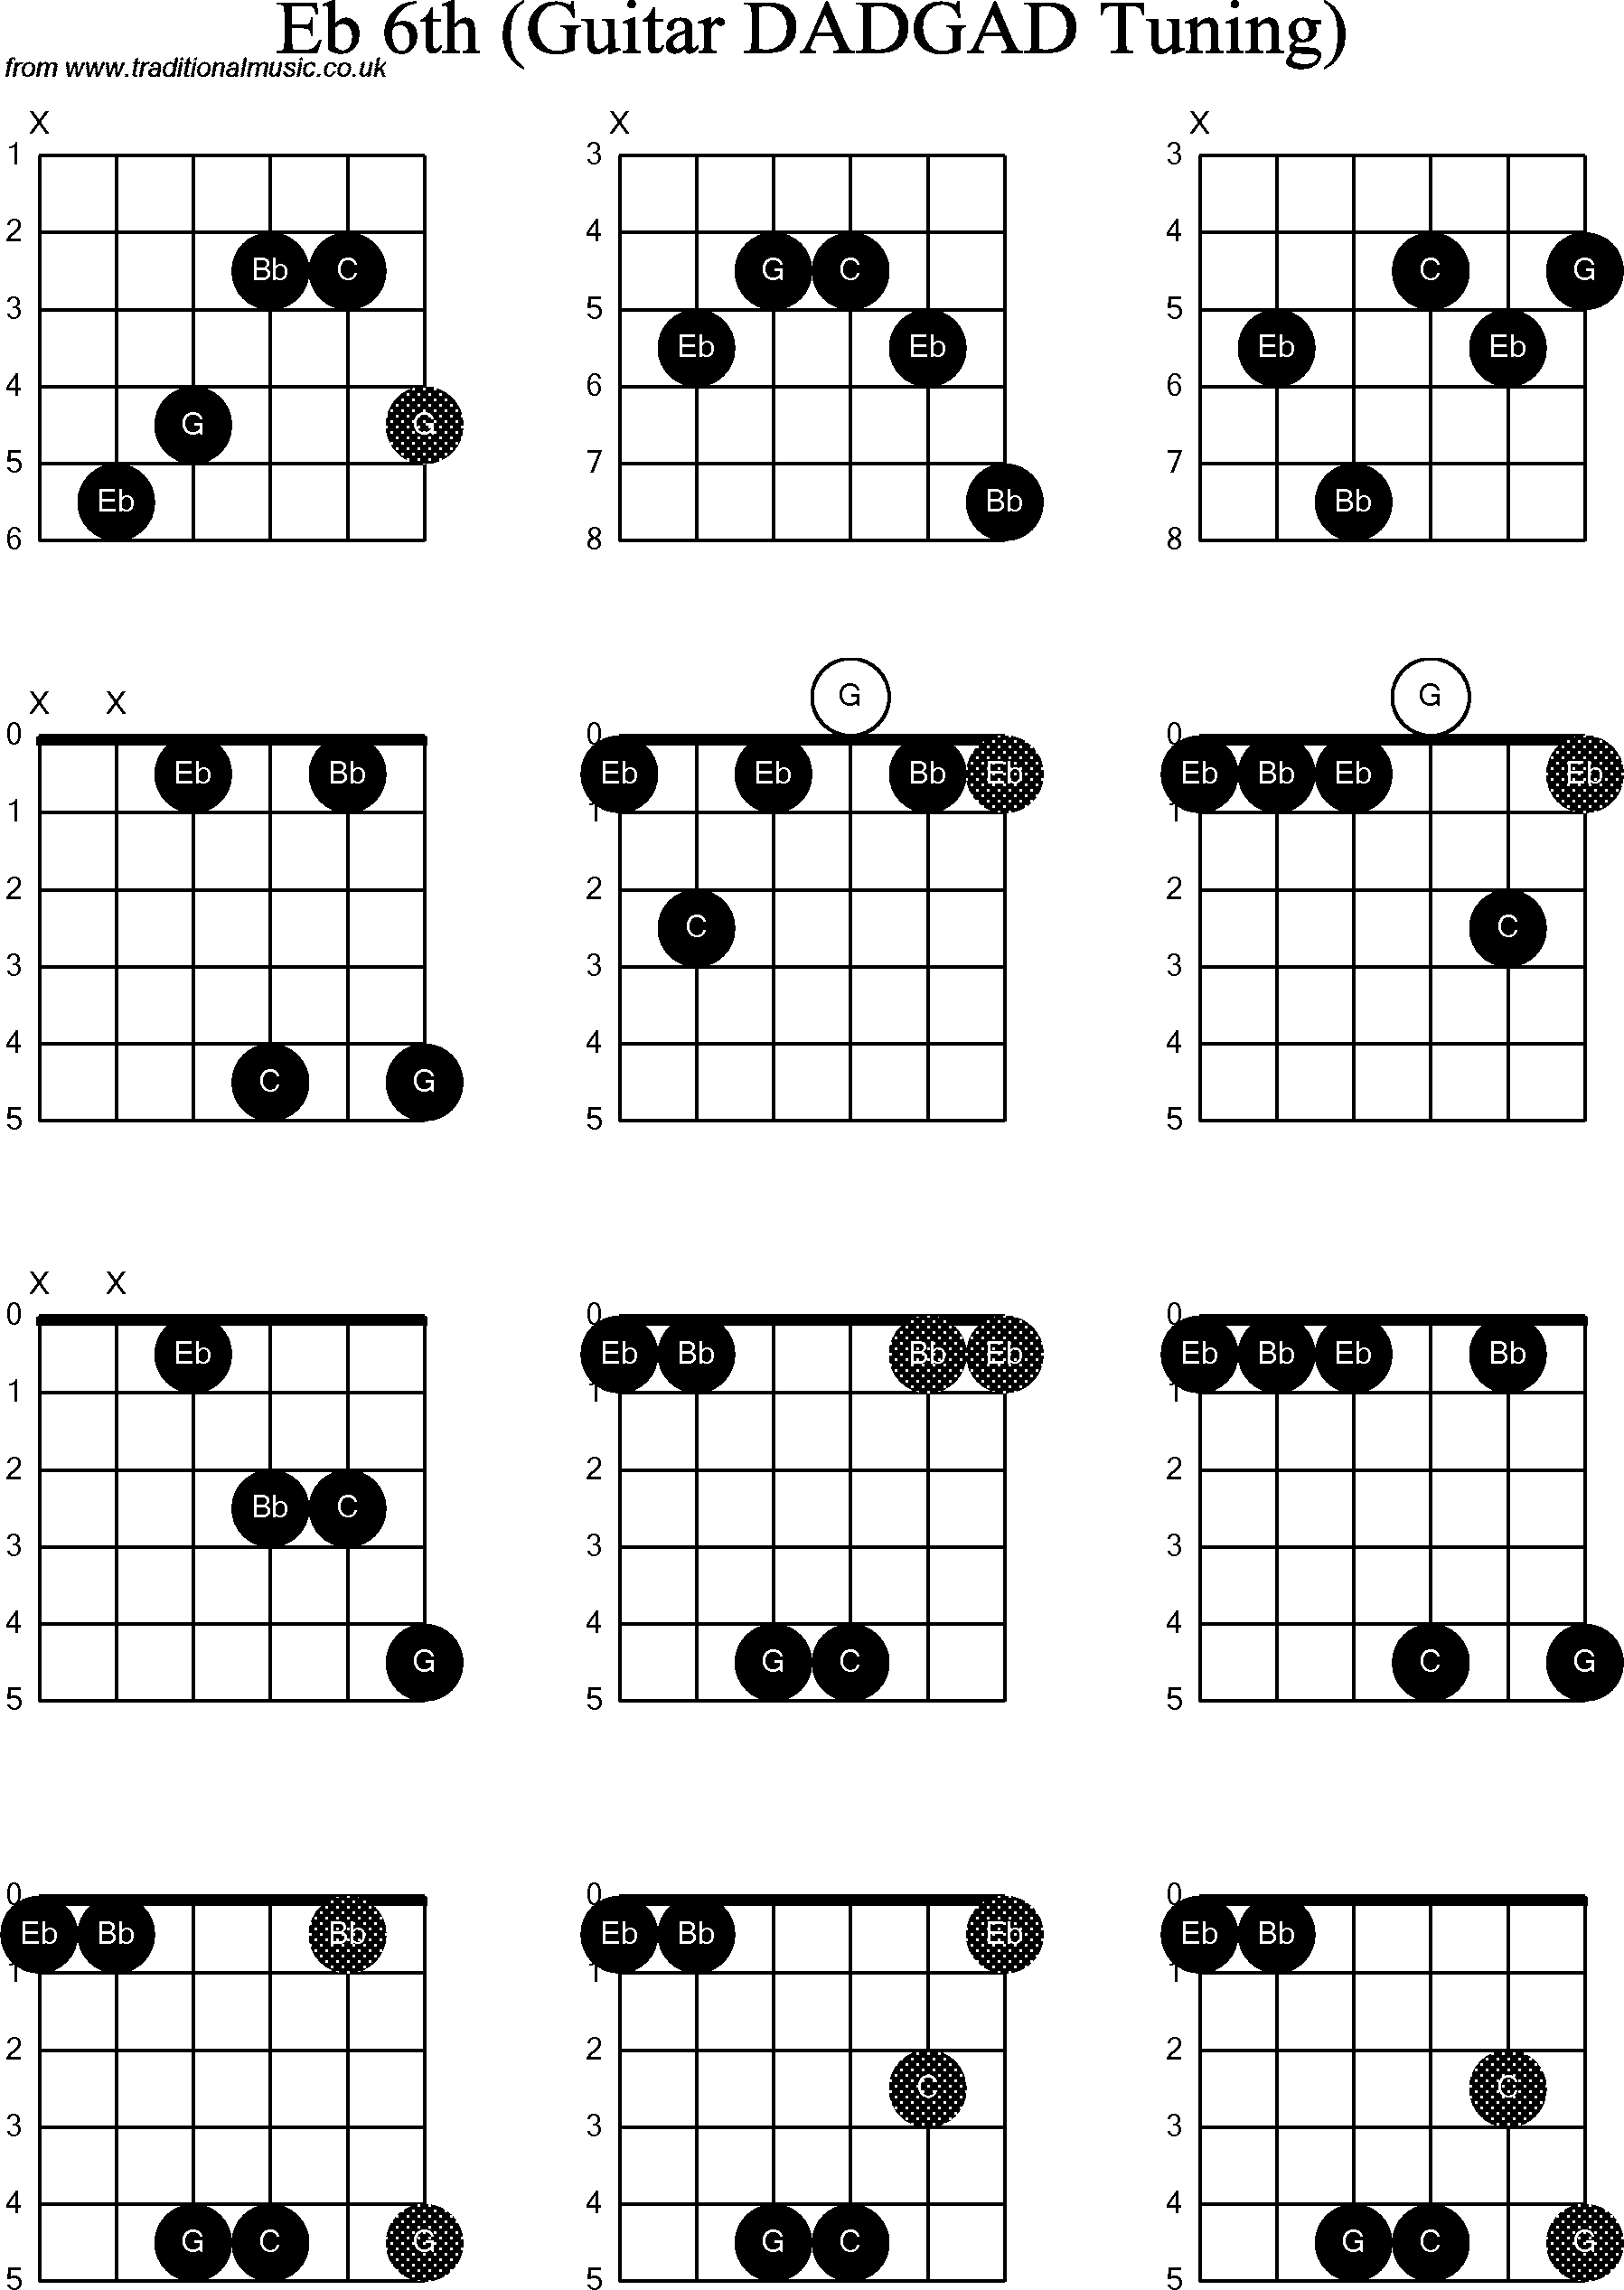 Chord Diagrams for D Modal Guitar(DADGAD), Eb6th